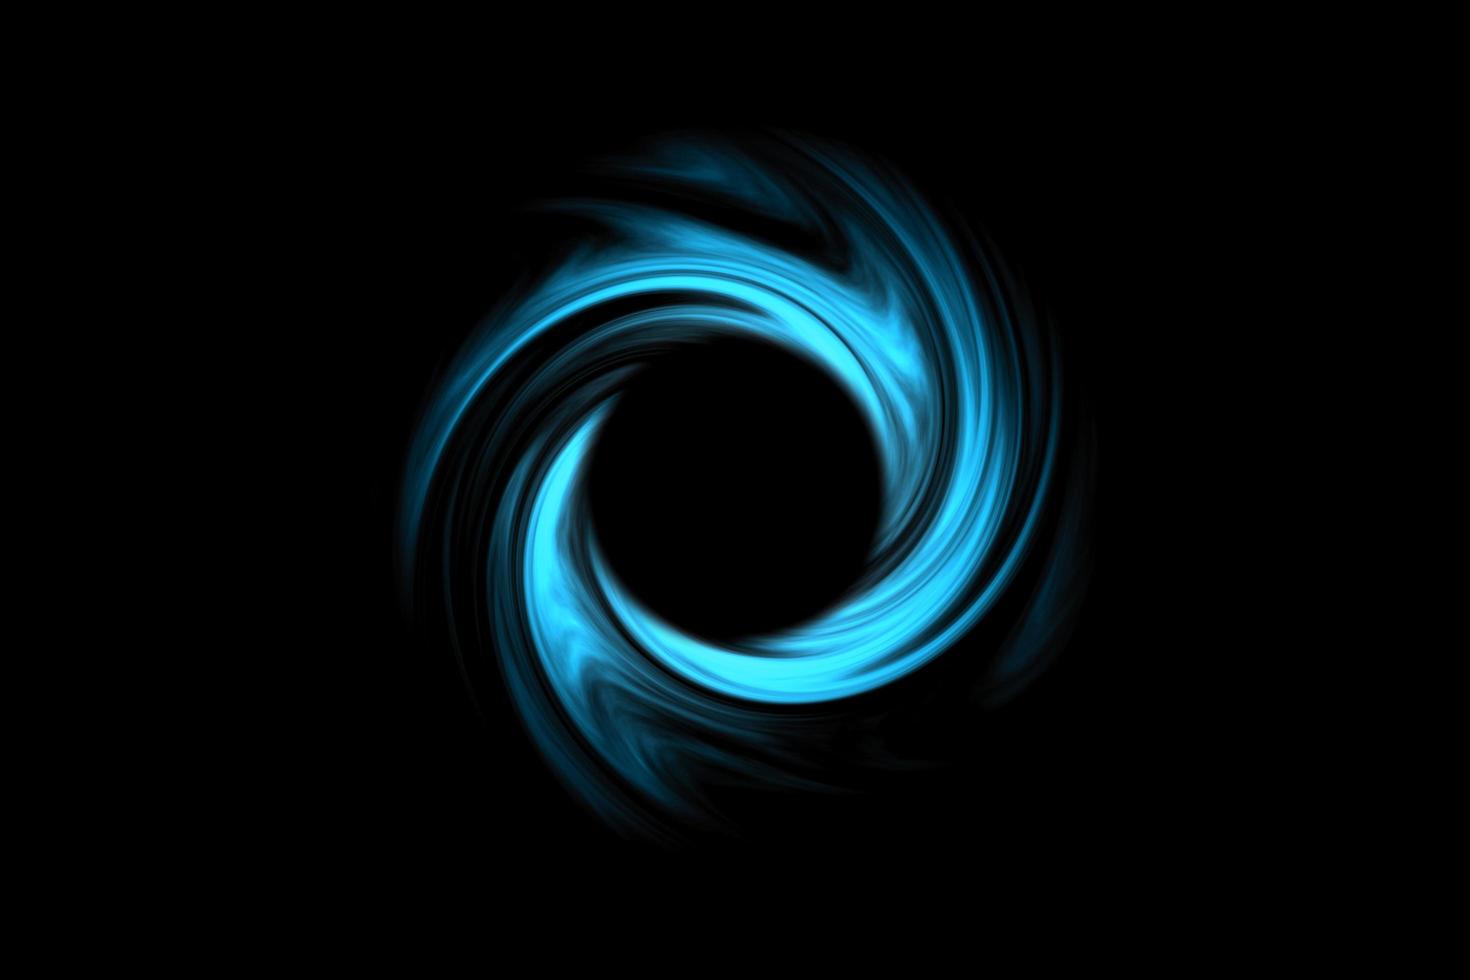 buchi neri astratti nello spazio con nuvola a spirale blu su sfondo nero foto